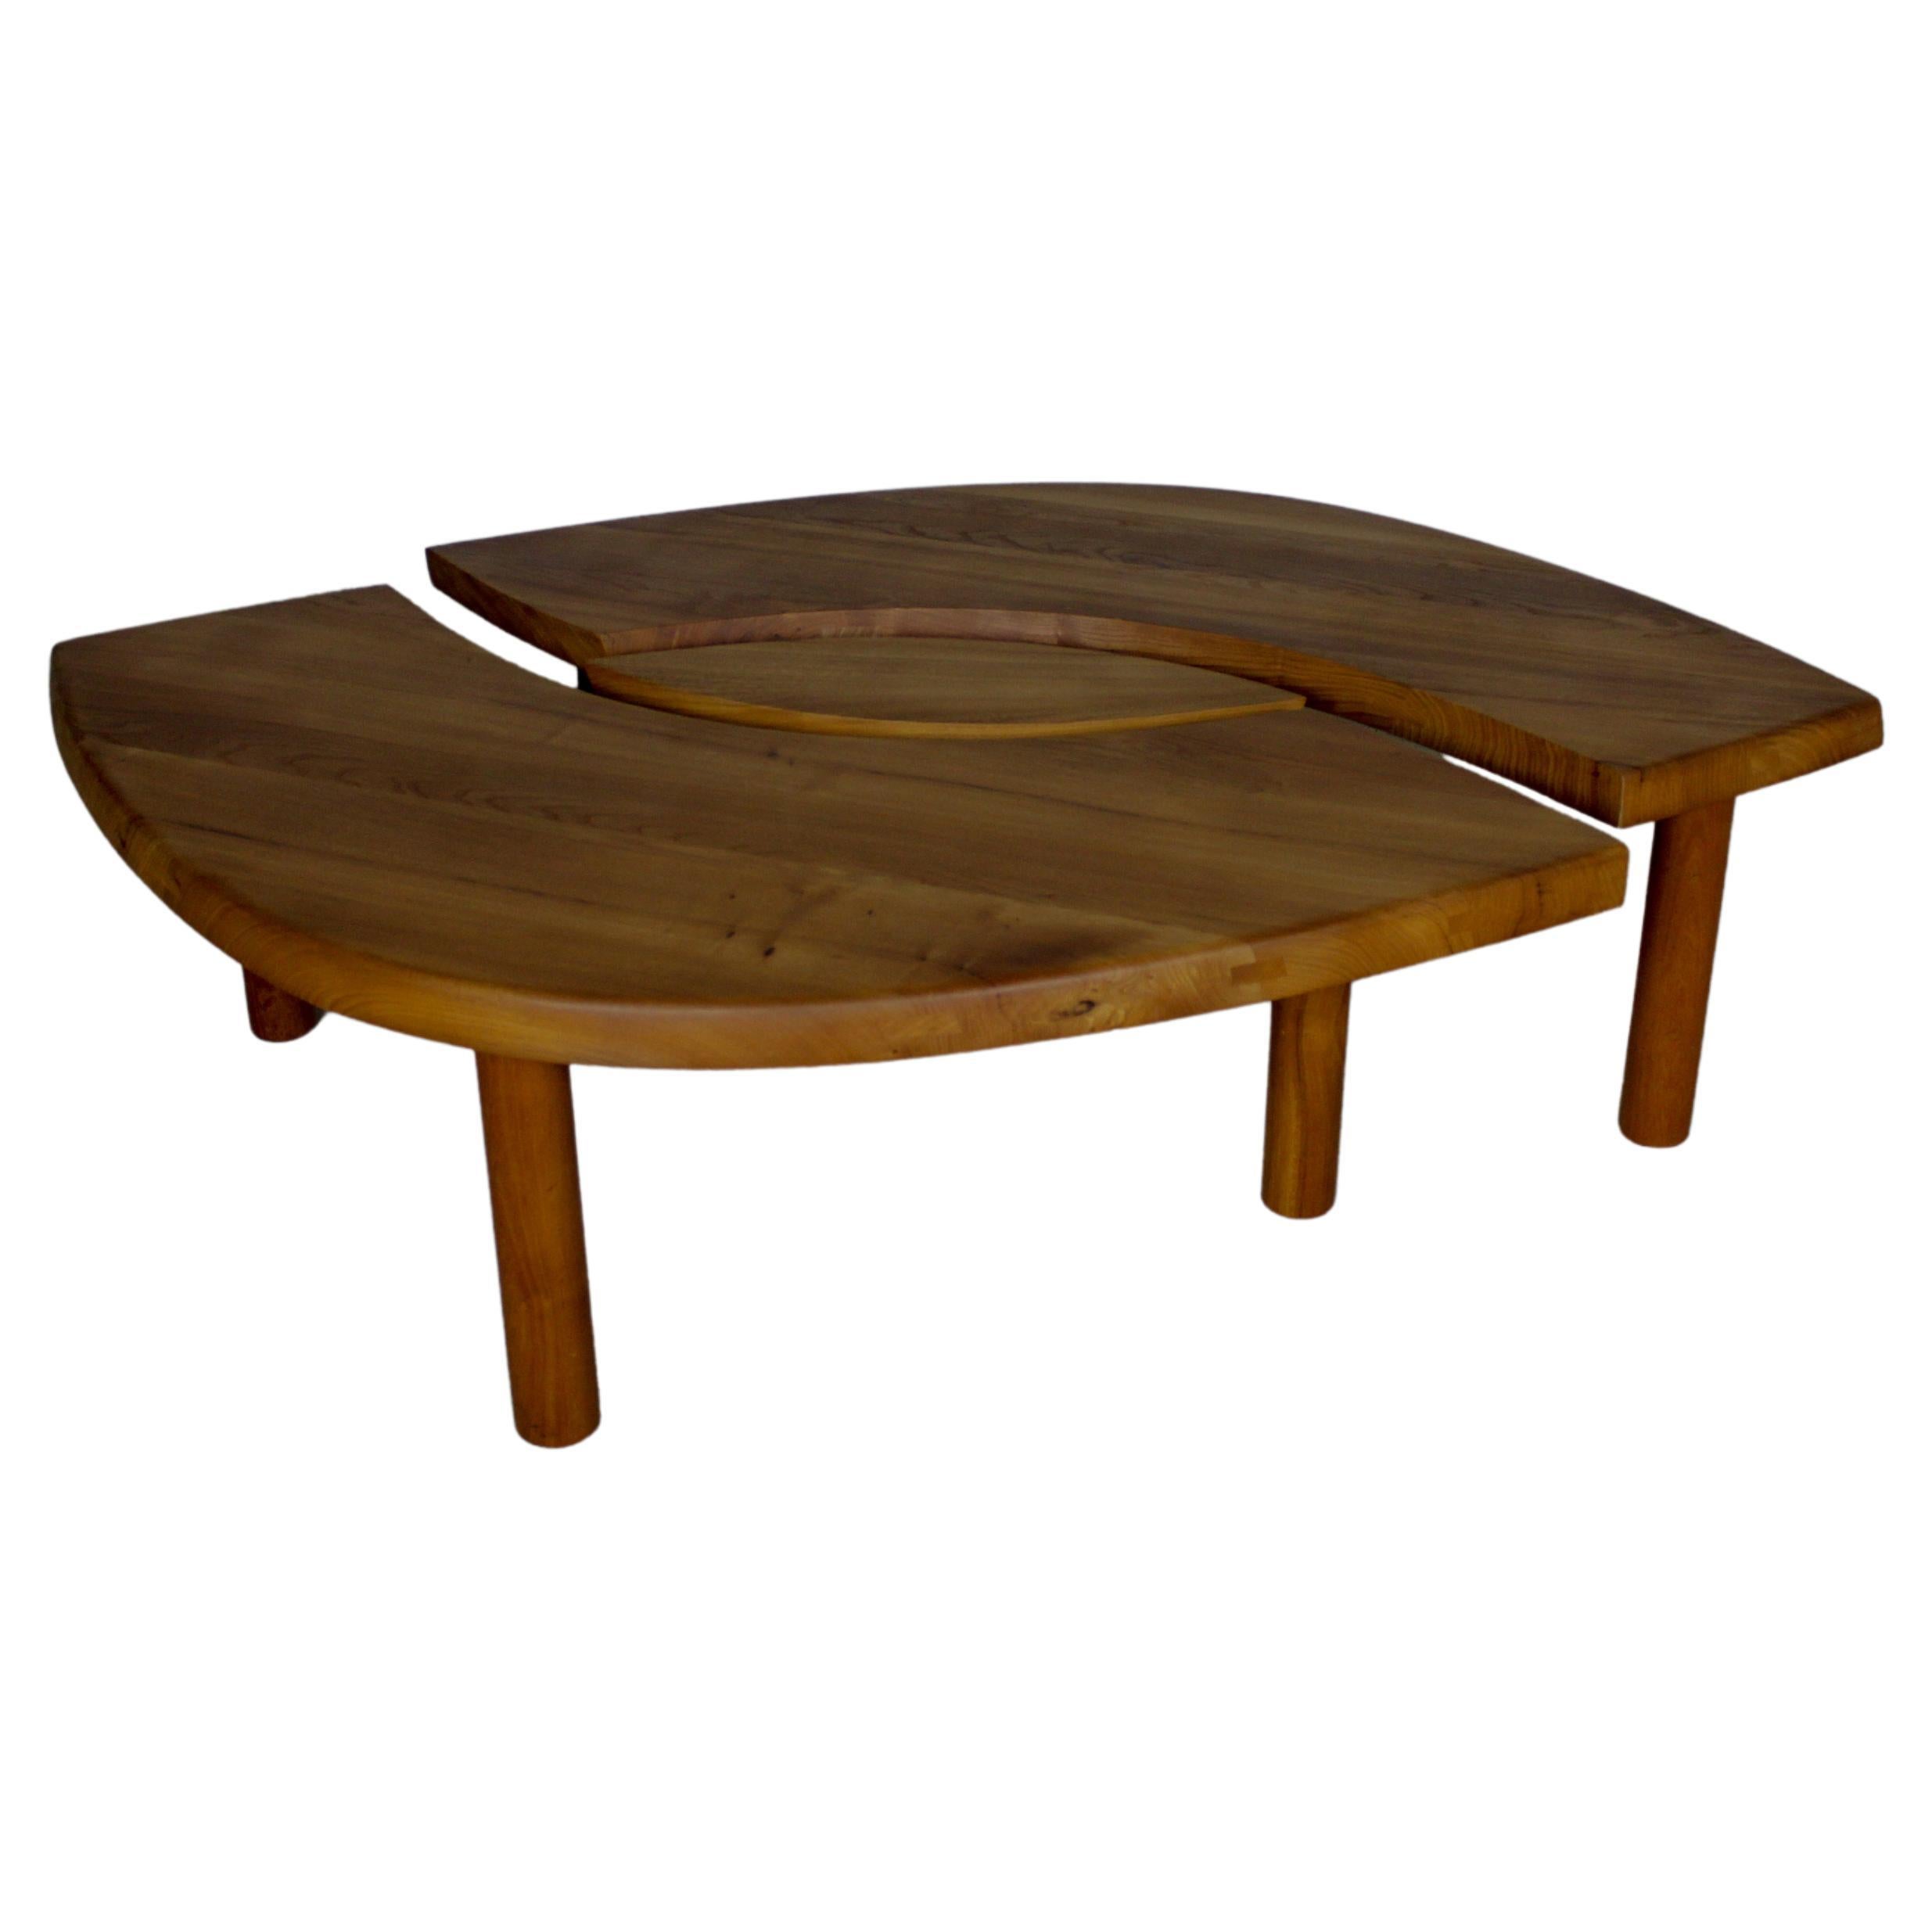 La table basse Pierre Chapo est un chef-d'œuvre du design moderne du milieu du siècle, incarnant l'essence de l'artisanat, de la fonctionnalité et de l'élégance intemporelle. Réalisée par le designer français Pierre Chapo, cette pièce emblématique